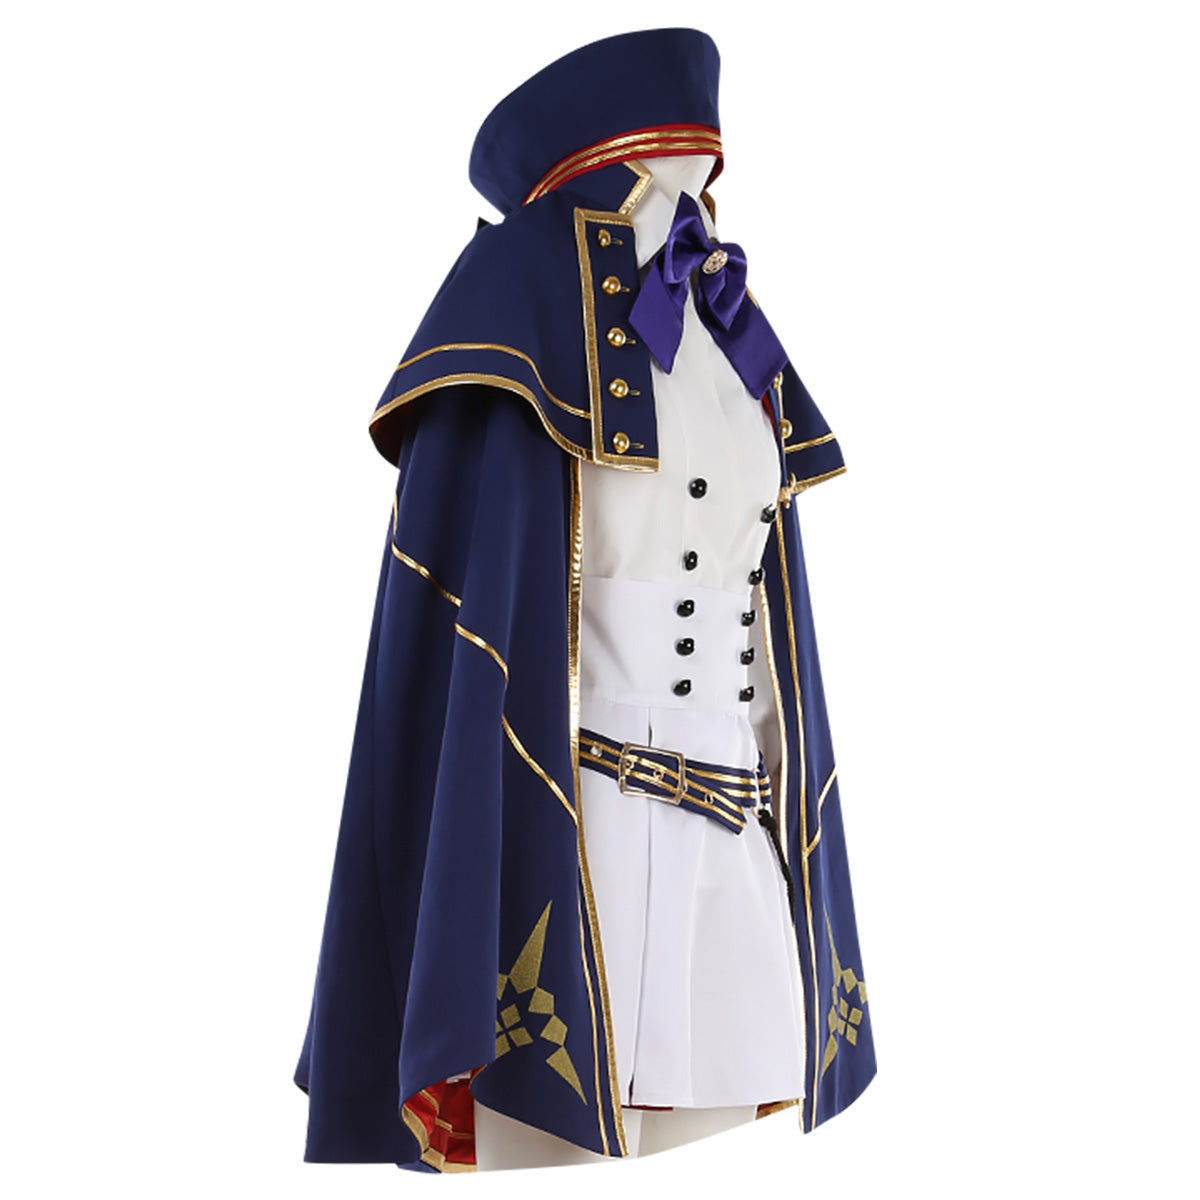 Fate Grand Order FGO Caster Artoria Pendragon Stage 2 Cosplay Costume